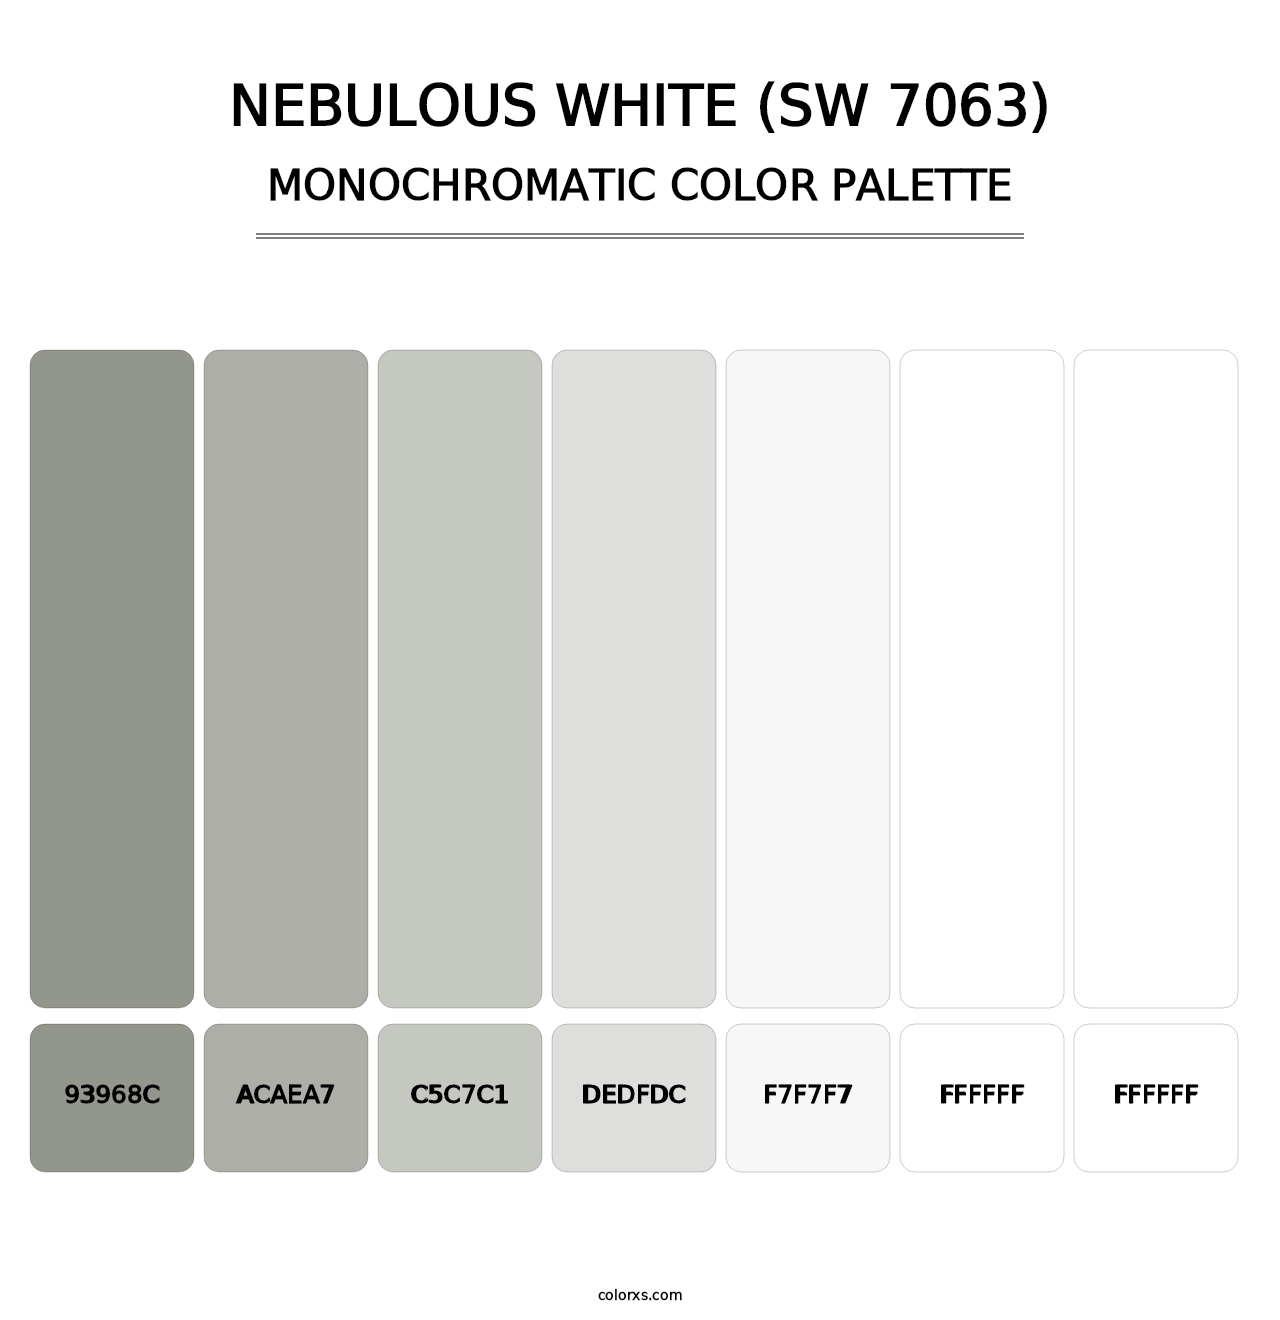 Nebulous White (SW 7063) - Monochromatic Color Palette